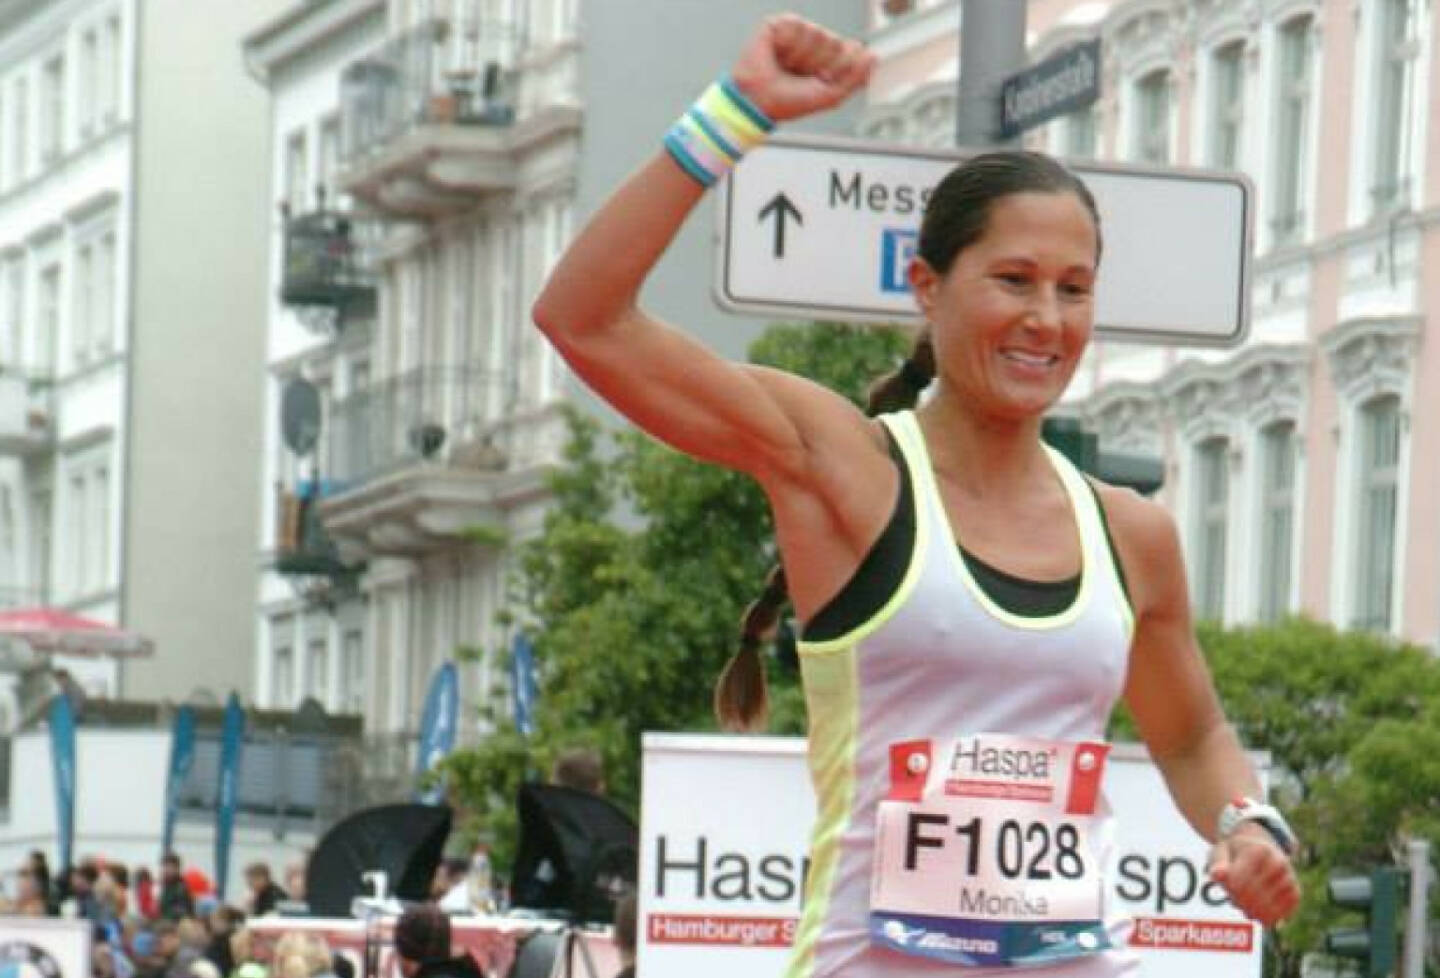 Yes, Ziel, Runplugged Betatesterin beim Hamburg Marathon in knapp mehr als 3h im Ziel https://www.facebook.com/